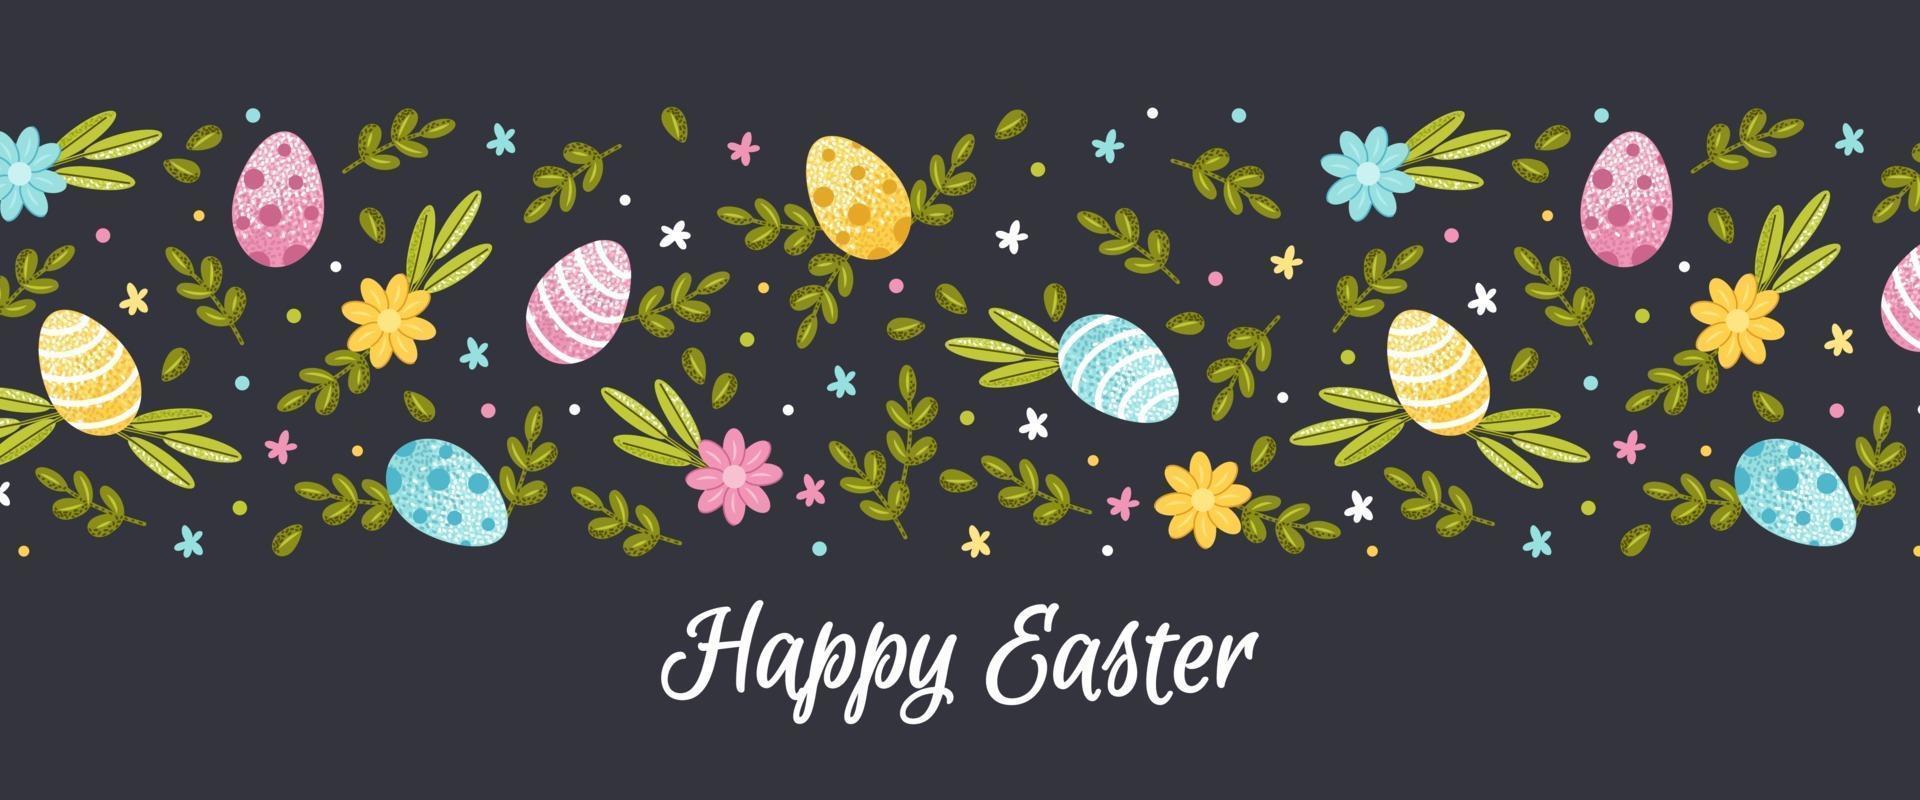 fröhliches Osterbanner. flache Vektorillustration mit Frühlingsblumen, Laub und gemalten Eiern auf einem dunklen Hintergrund vektor